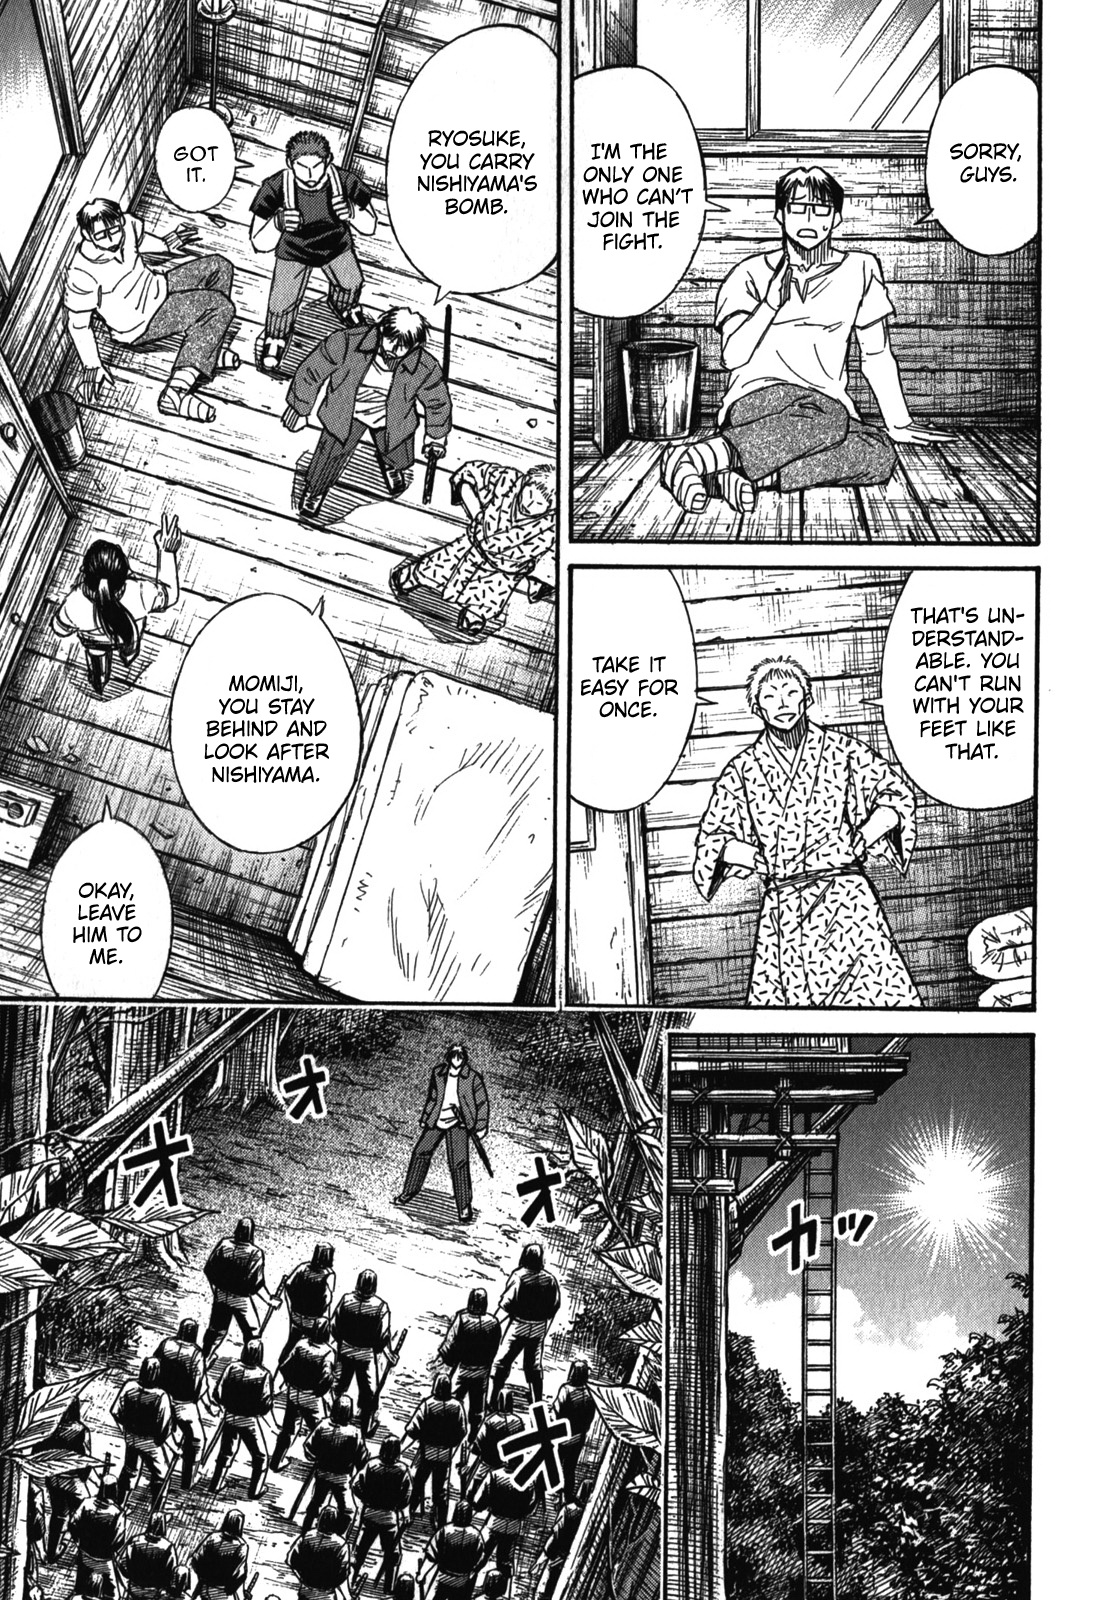 Higanjima - Last 47 Days - Page 1